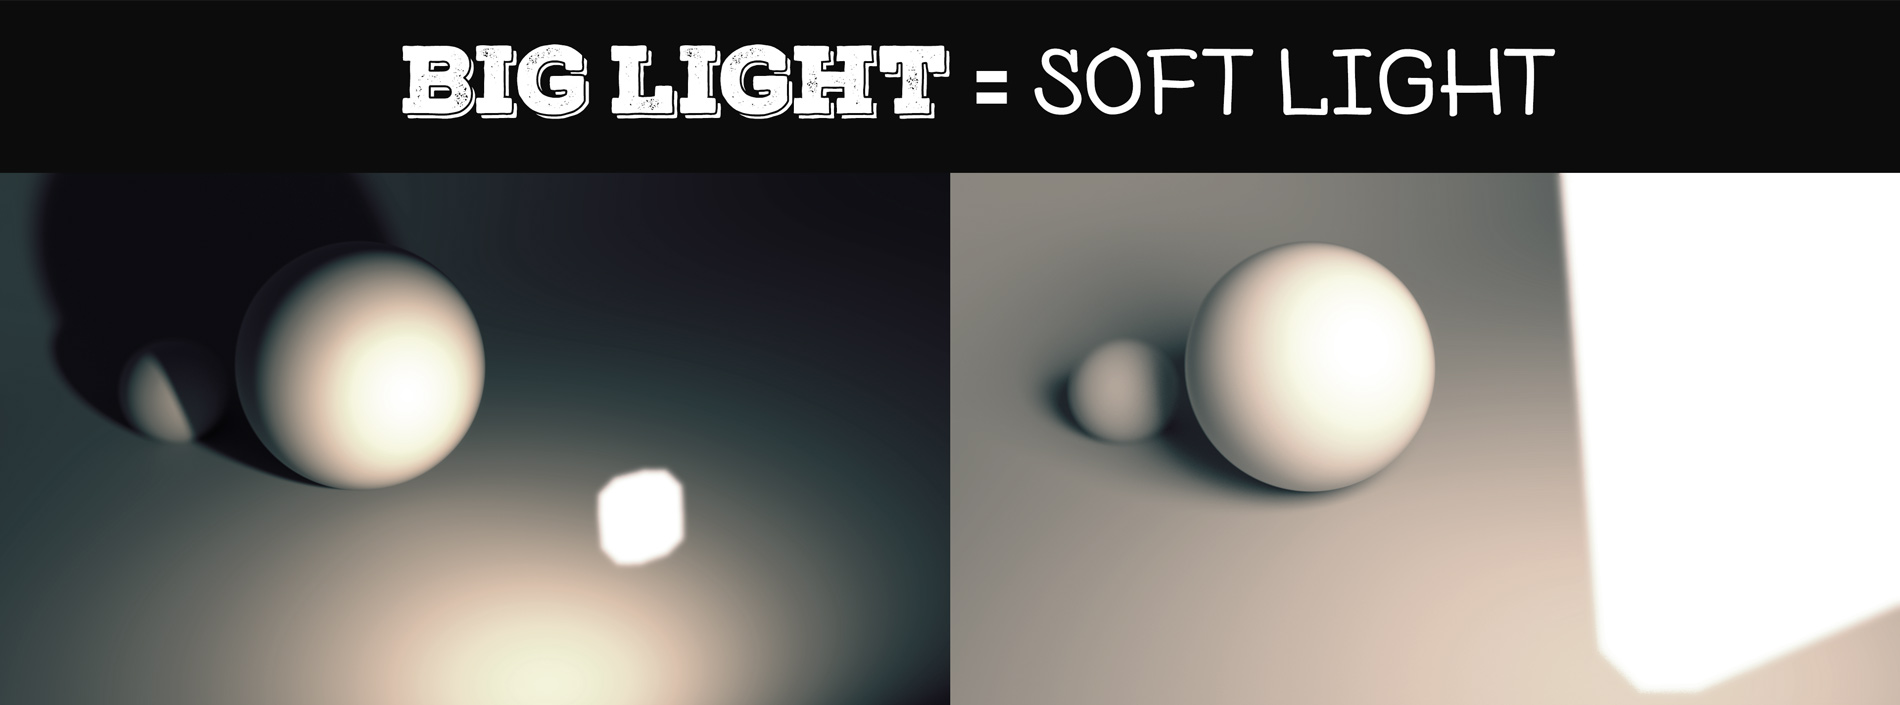 soft lighting blender